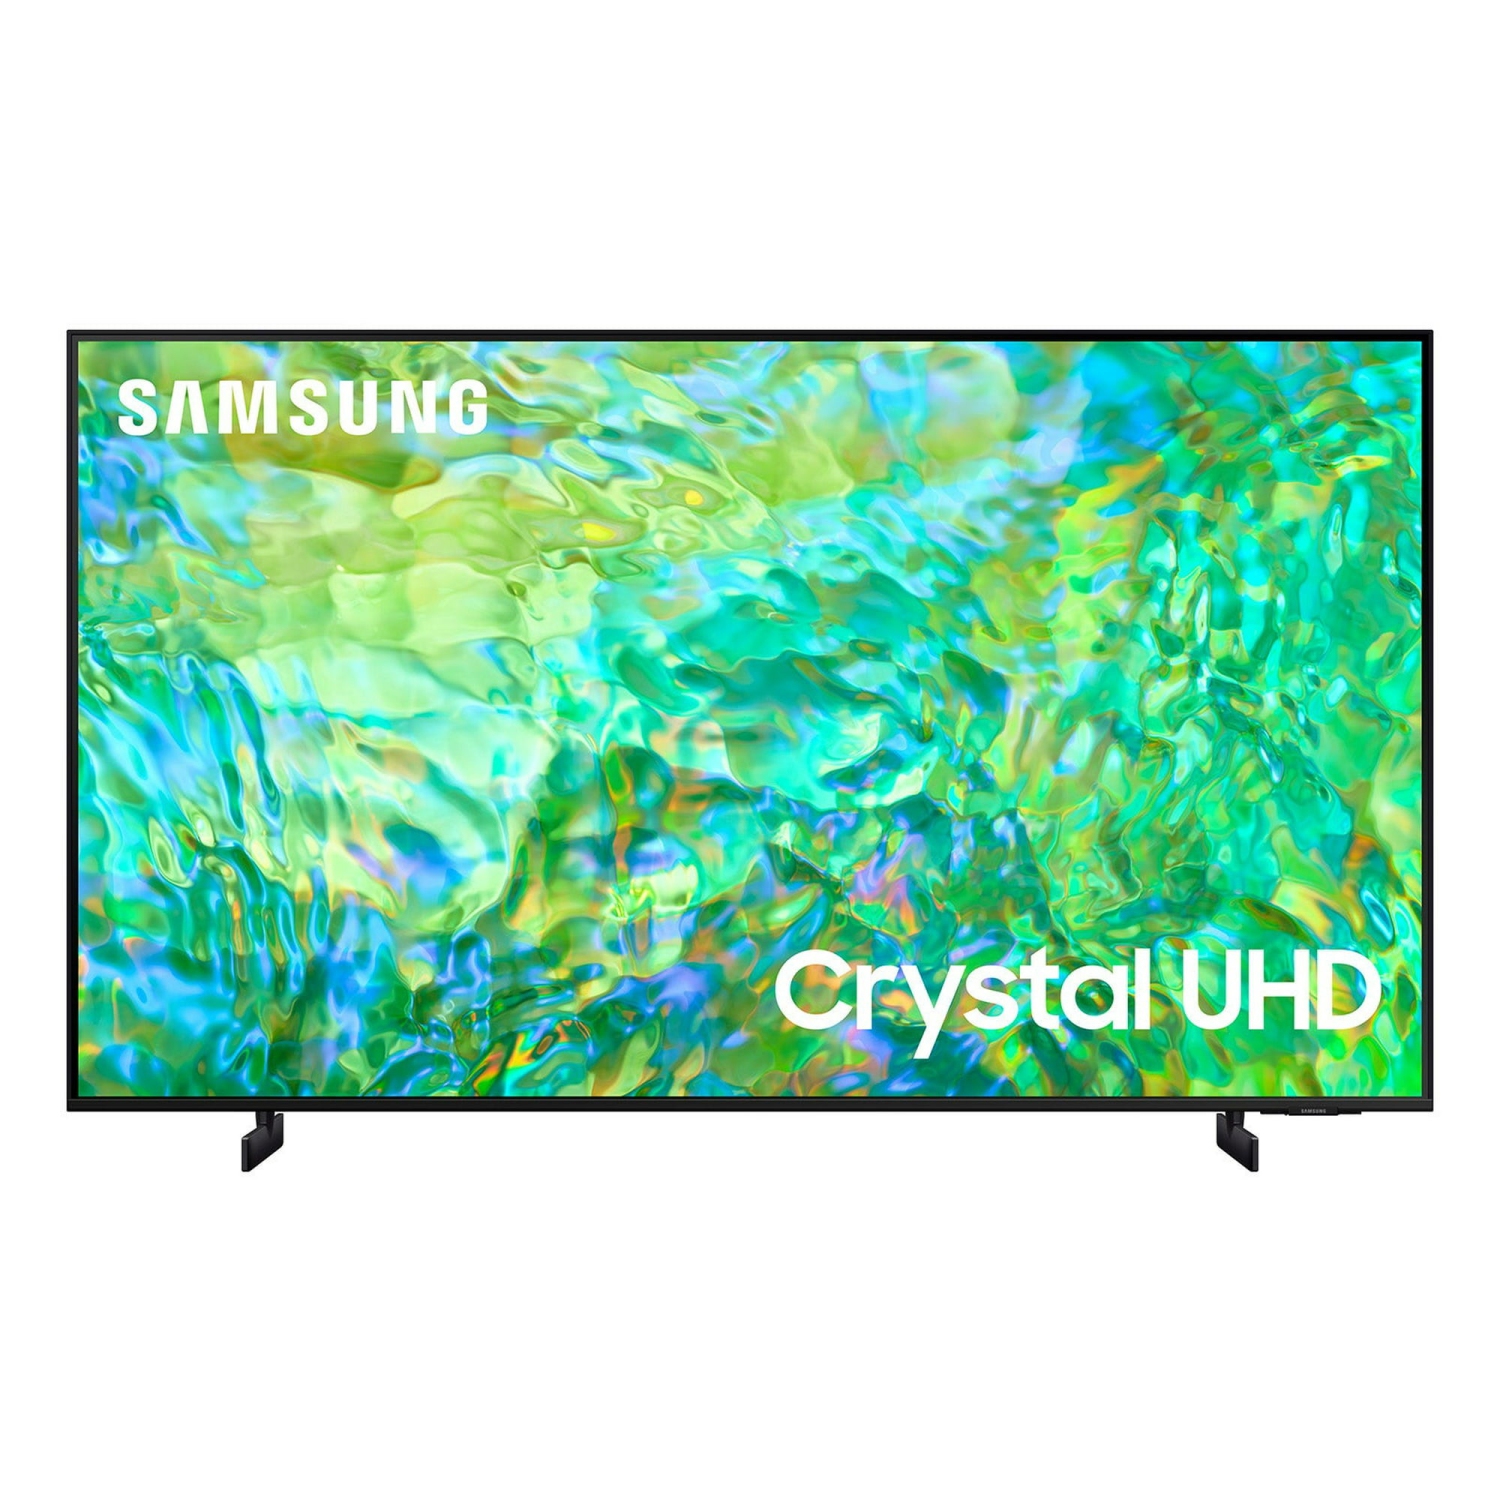 REFURBISHED (GOOD) - SAMSUNG 50" Class CU8000B Crystal UHD 4K Smart Television (UN50CU8000B)